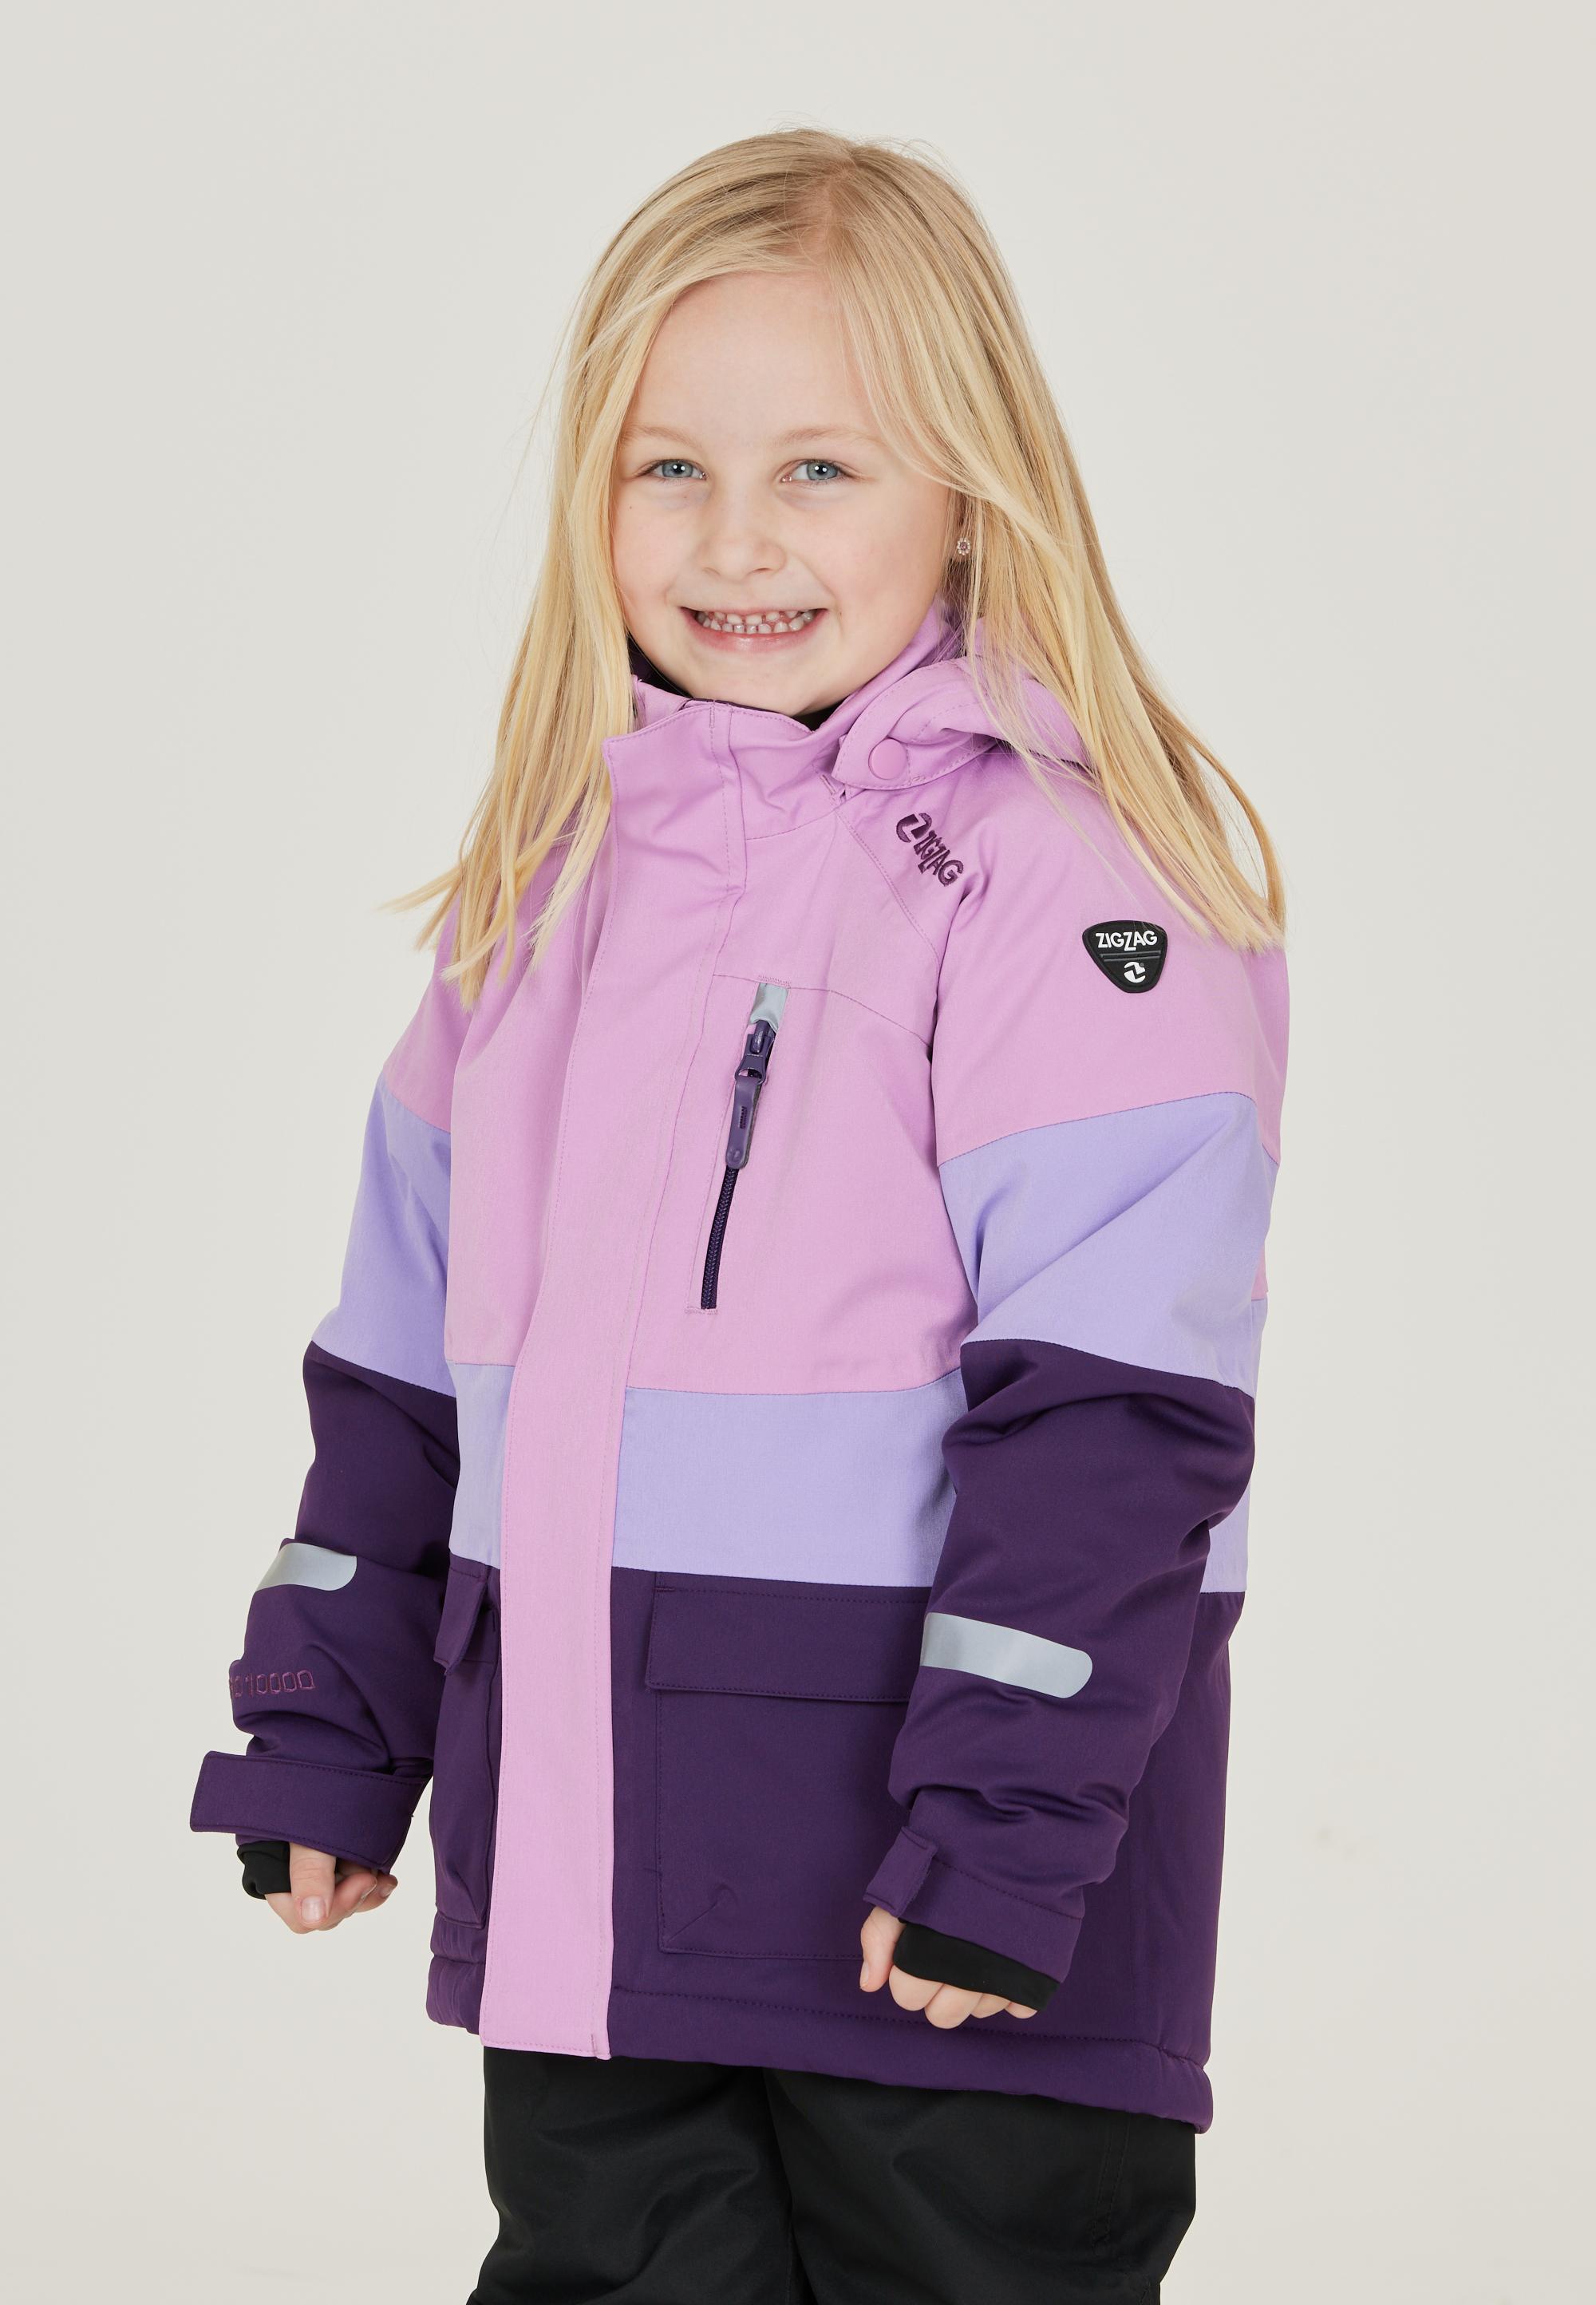 Pennant kaufen SportScheck von Taylora Purple Online Shop ZigZag Skijacke 4149 Kinder im